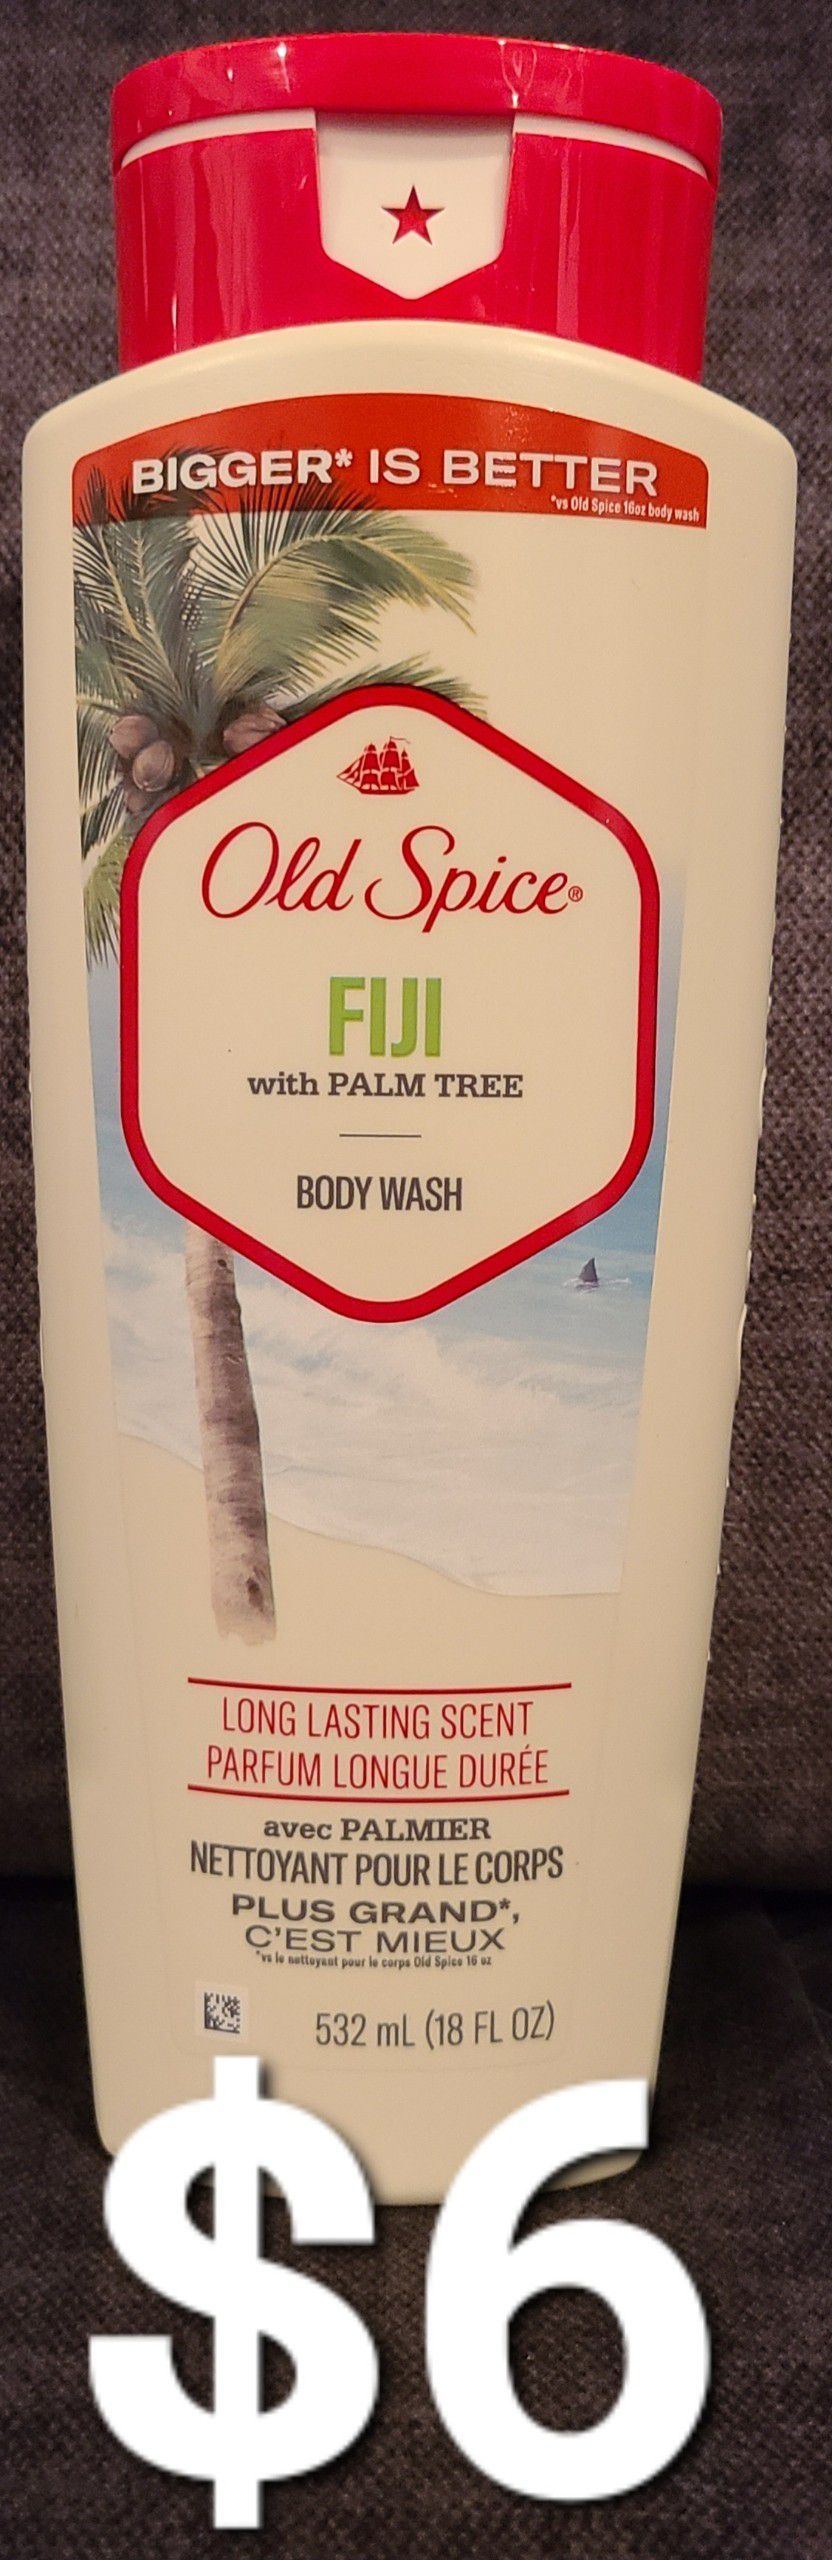 Old Spice Fiji Body Wash